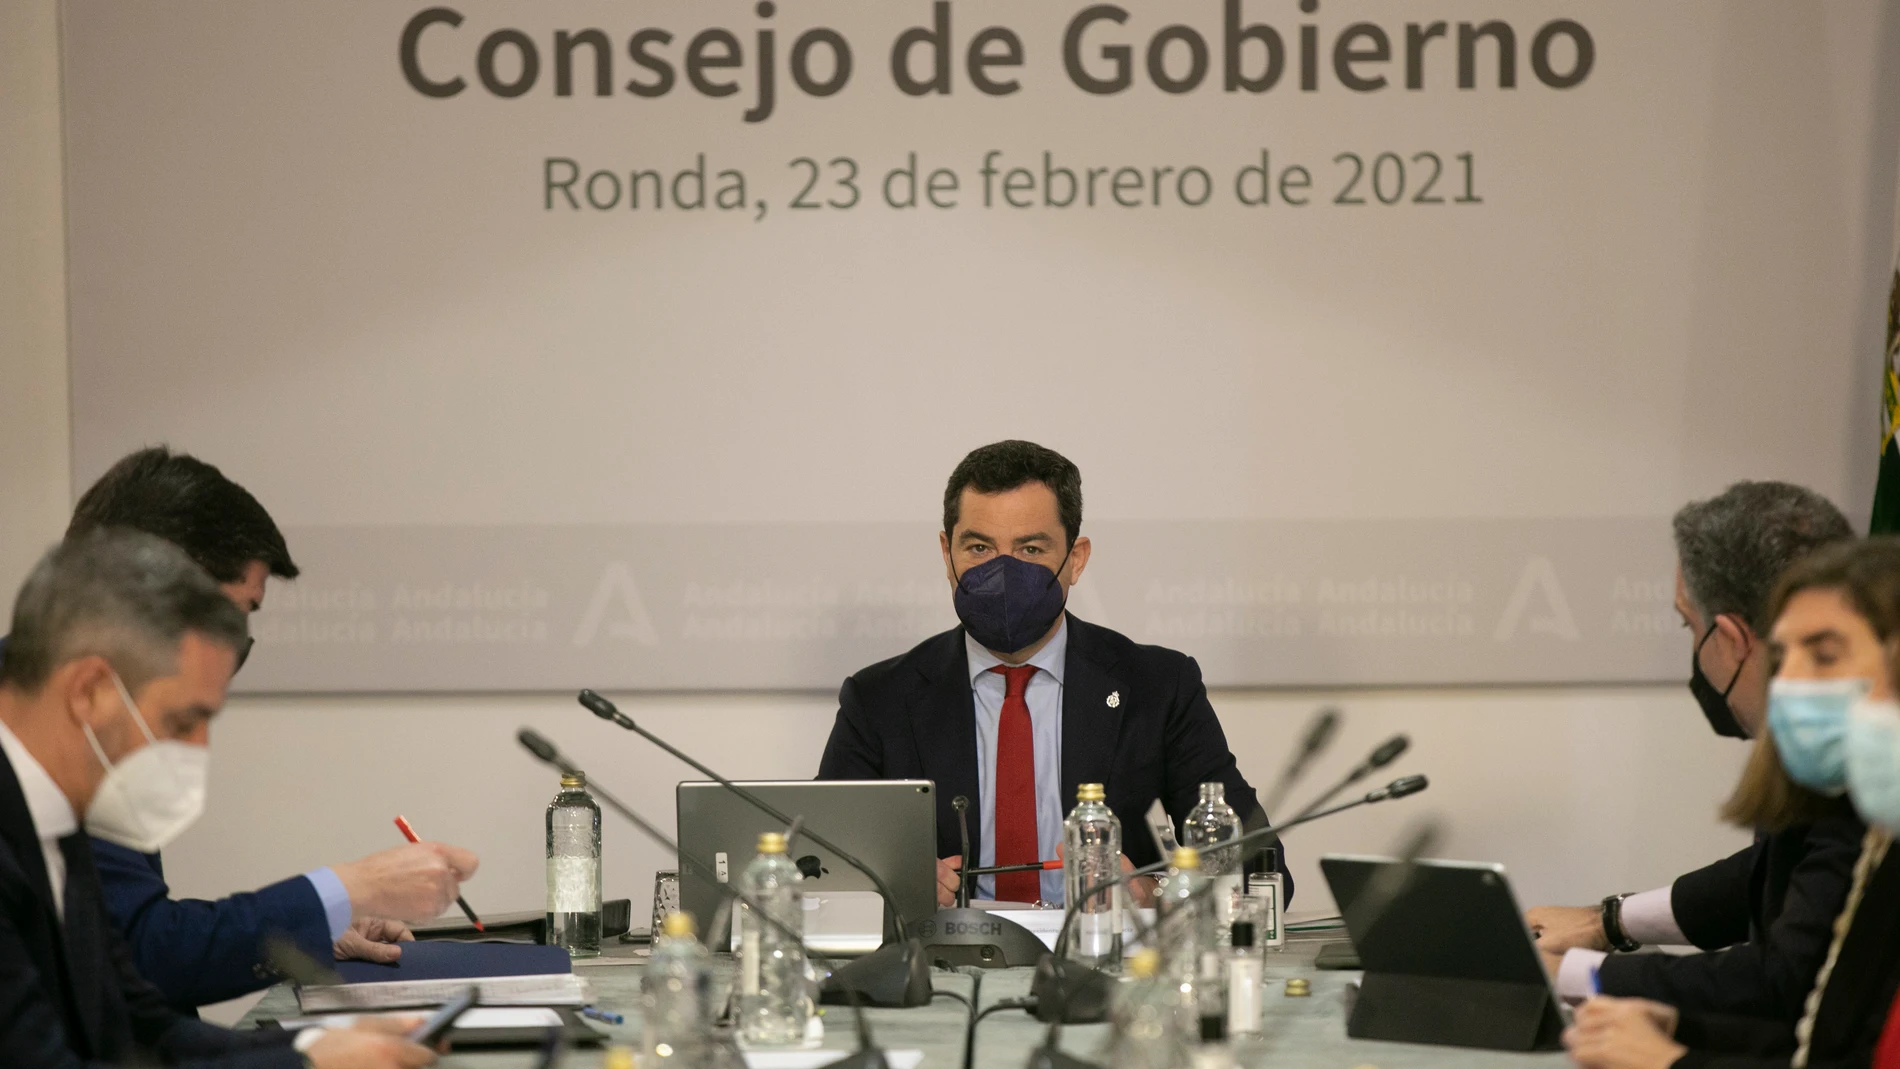 El presidente de la Junta de Andalucía, Juanma Moreno, durante la reunión semanal del Consejo de Gobierno de la Junta de Andalucía, celebrada hoy en el municipio de Ronda